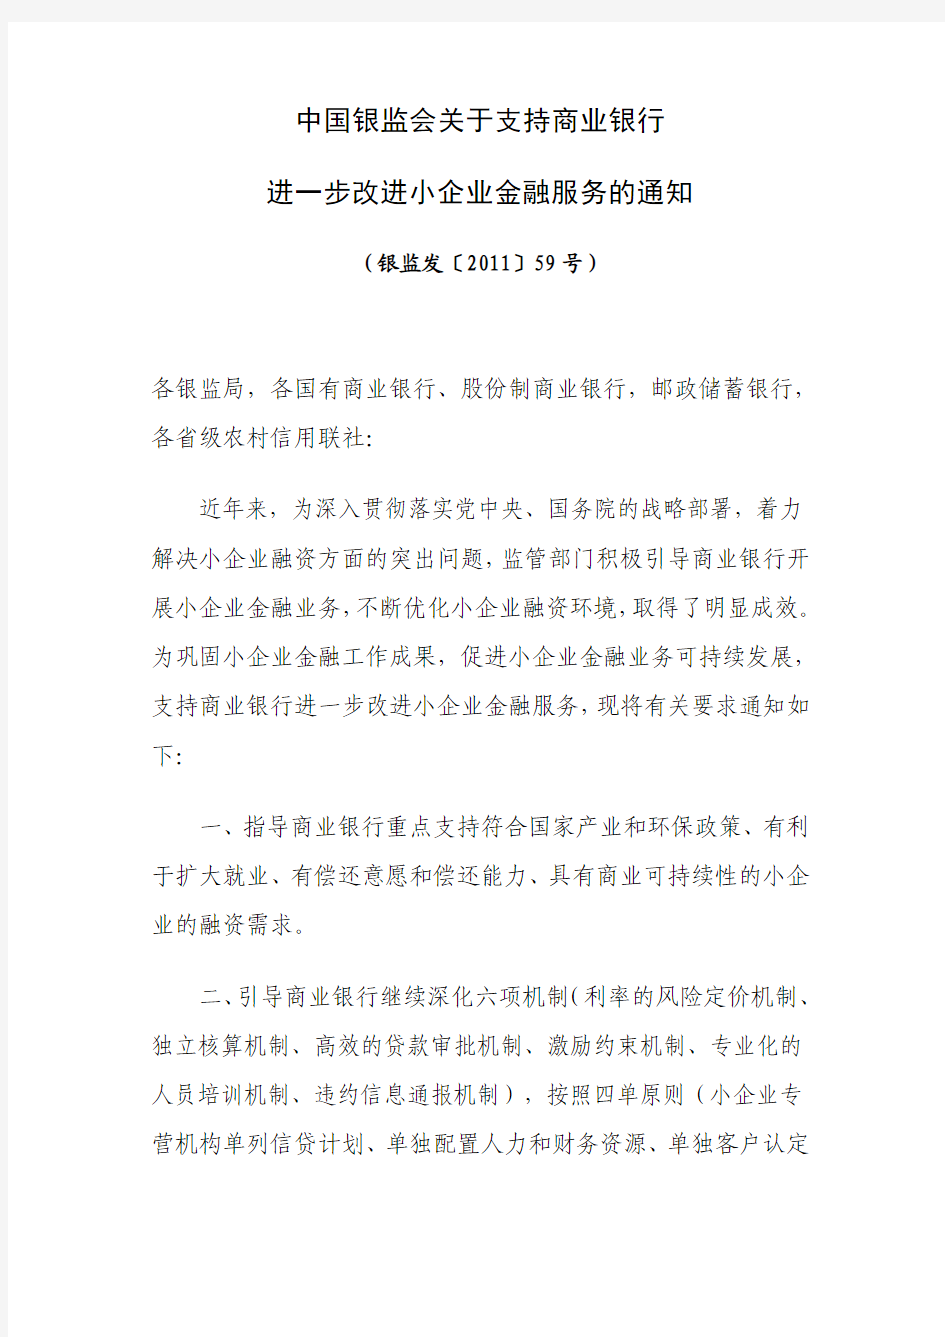 中国银监会关于支持商业银行进一步改进小企业金融服务的通知-(银监发〔2011〕59号